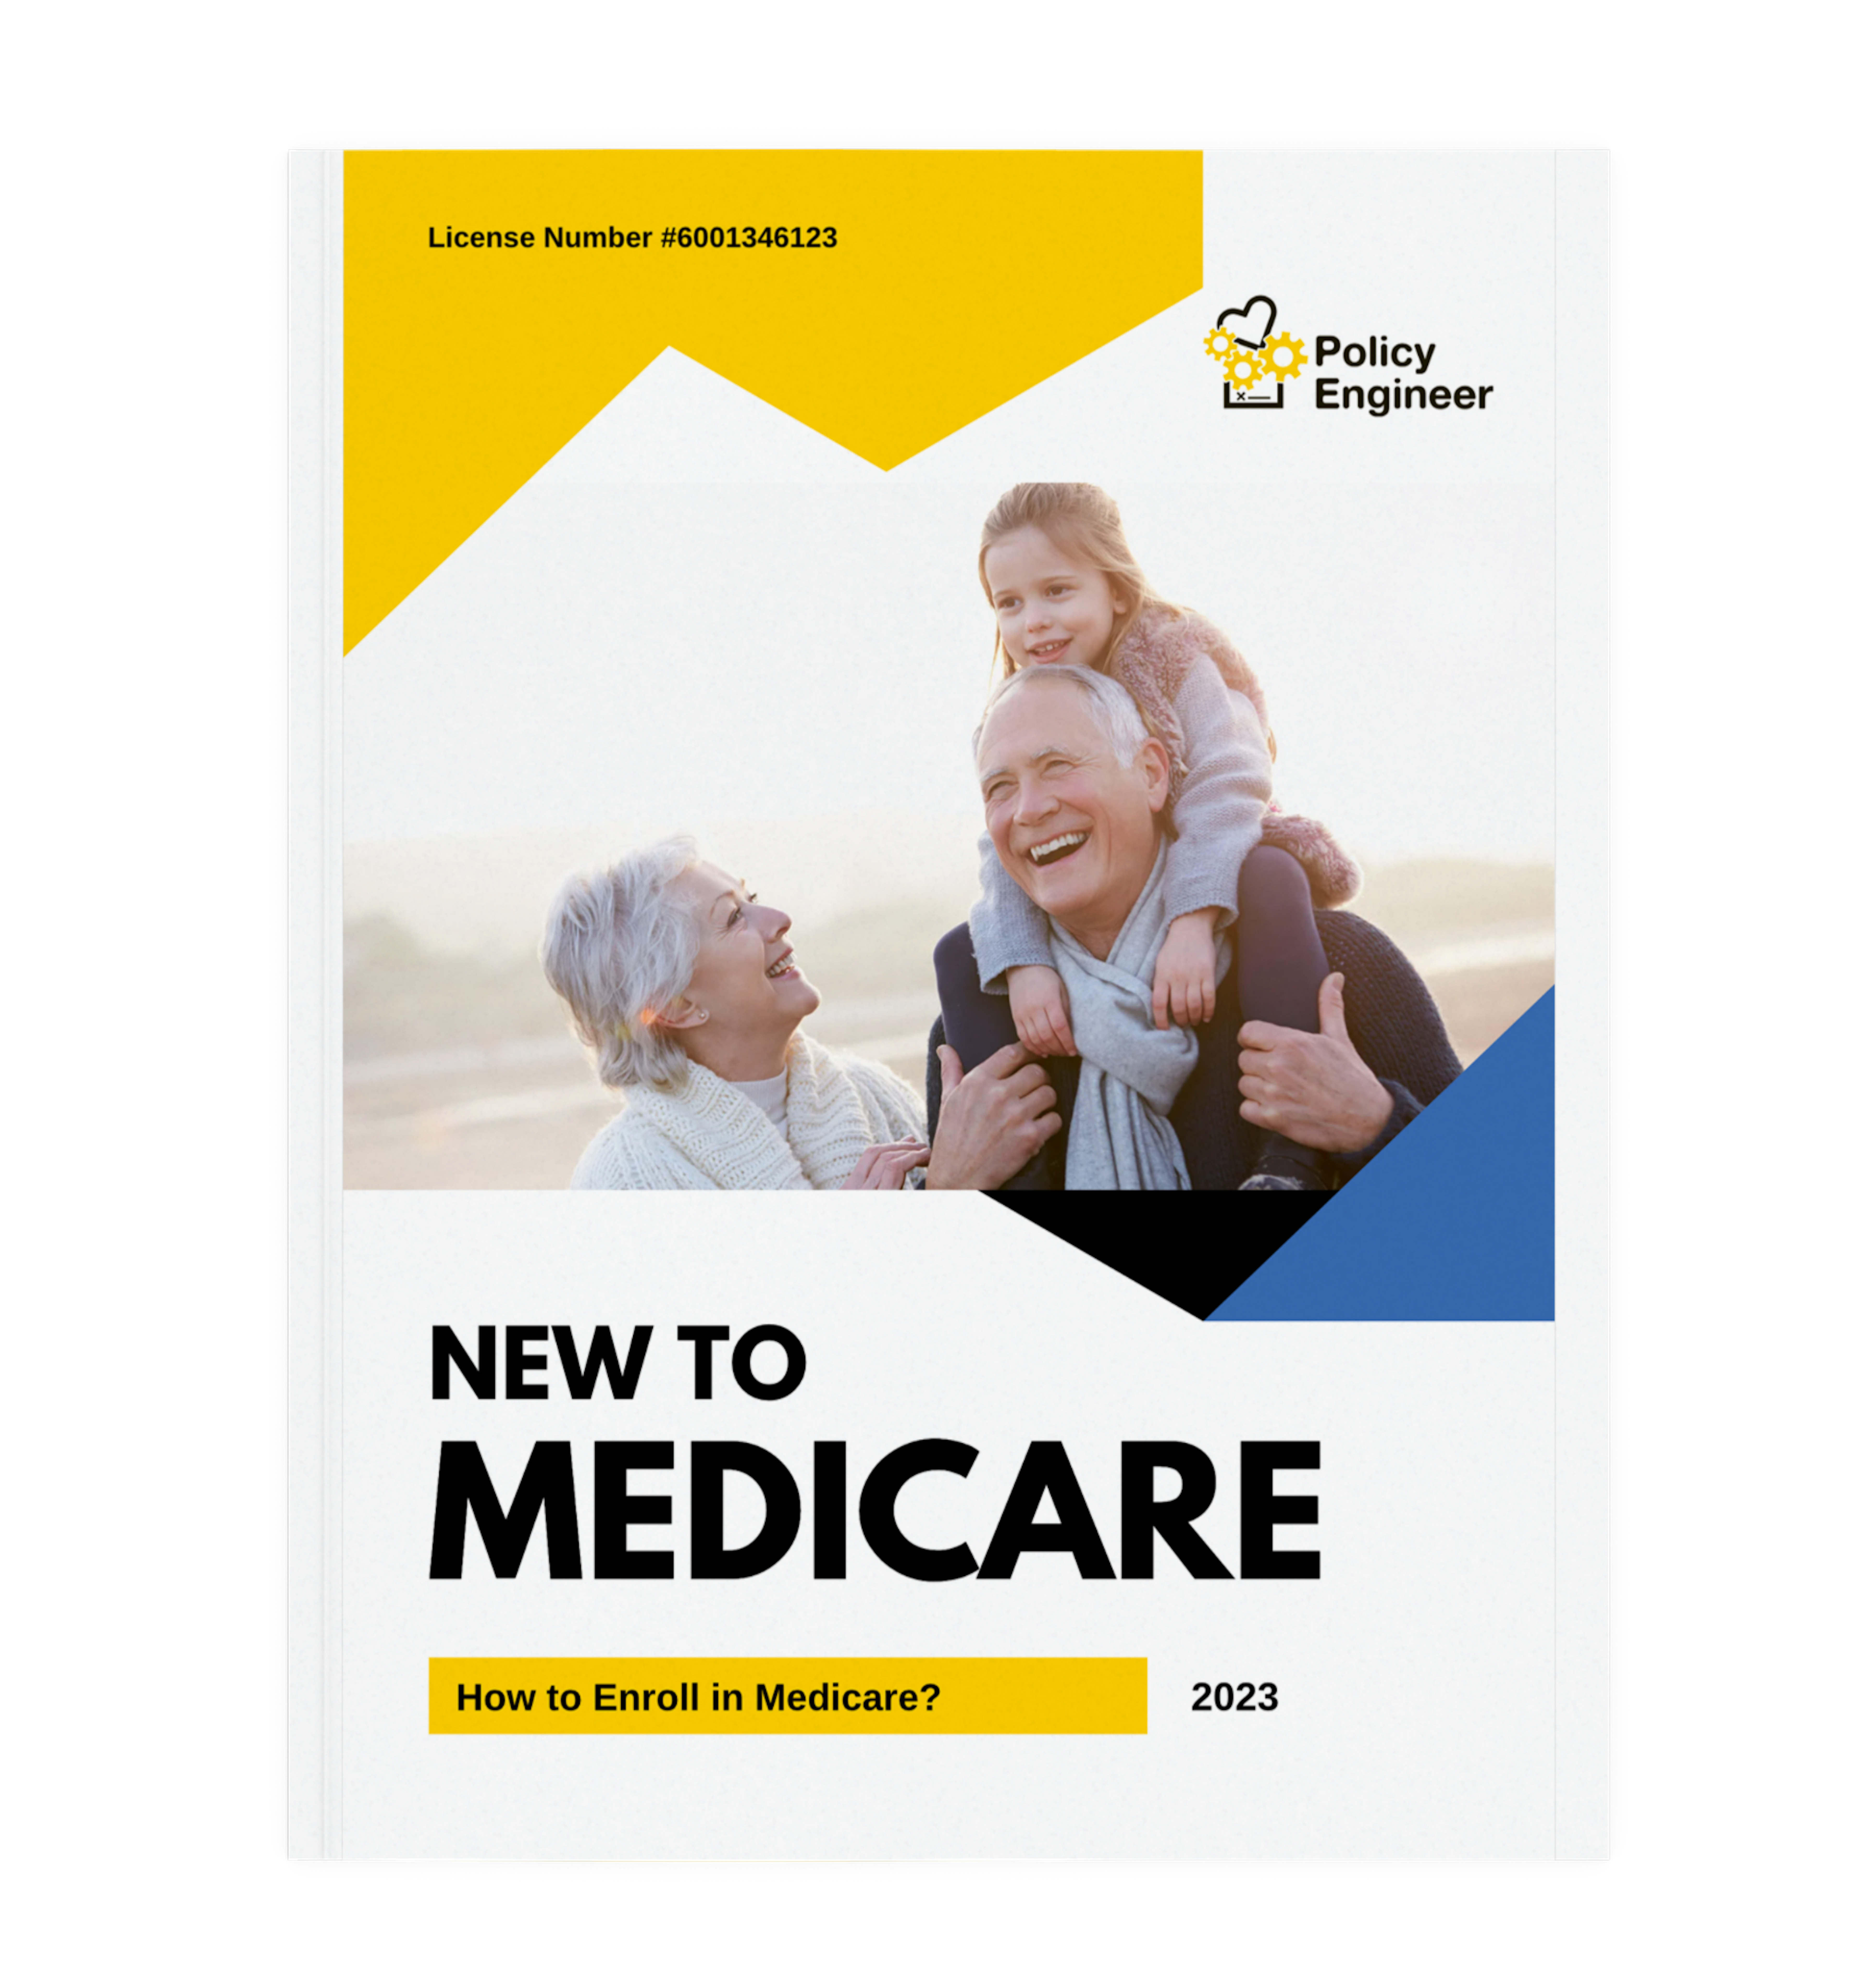 Medicare 101 Handbook – Bundle